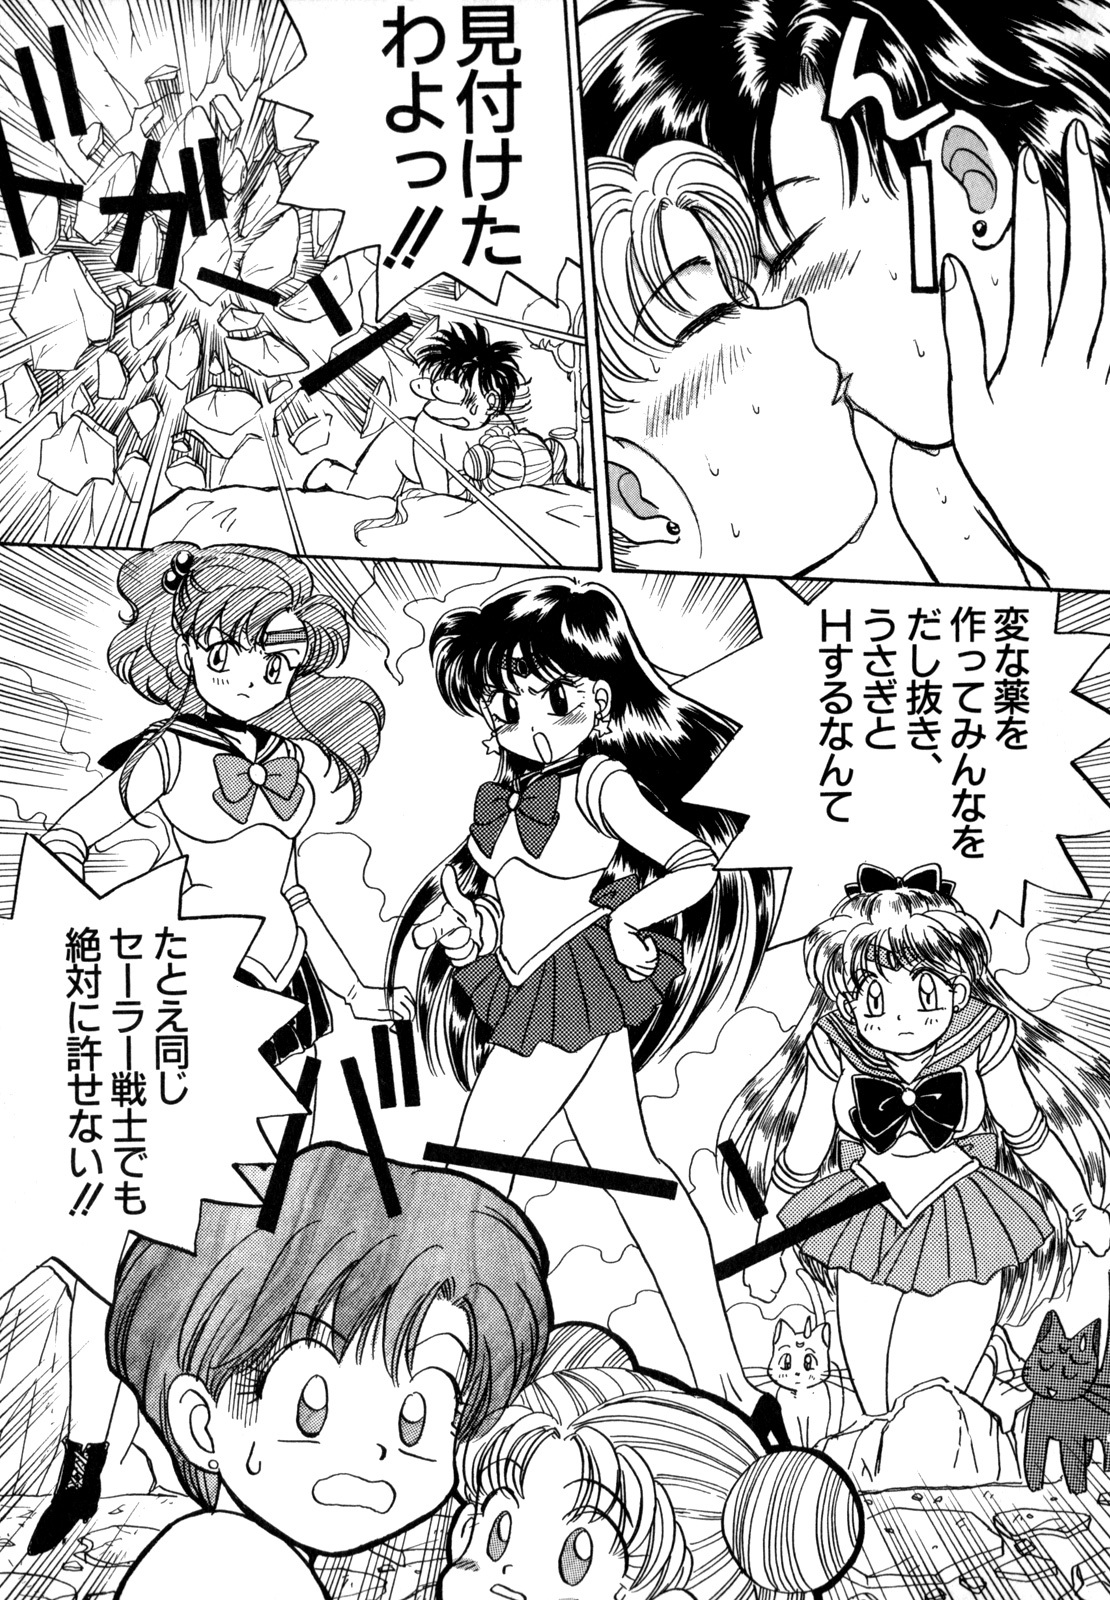 [Anthology] Lunatic Party 4 (Bishoujo Senshi Sailor Moon) page 44 full